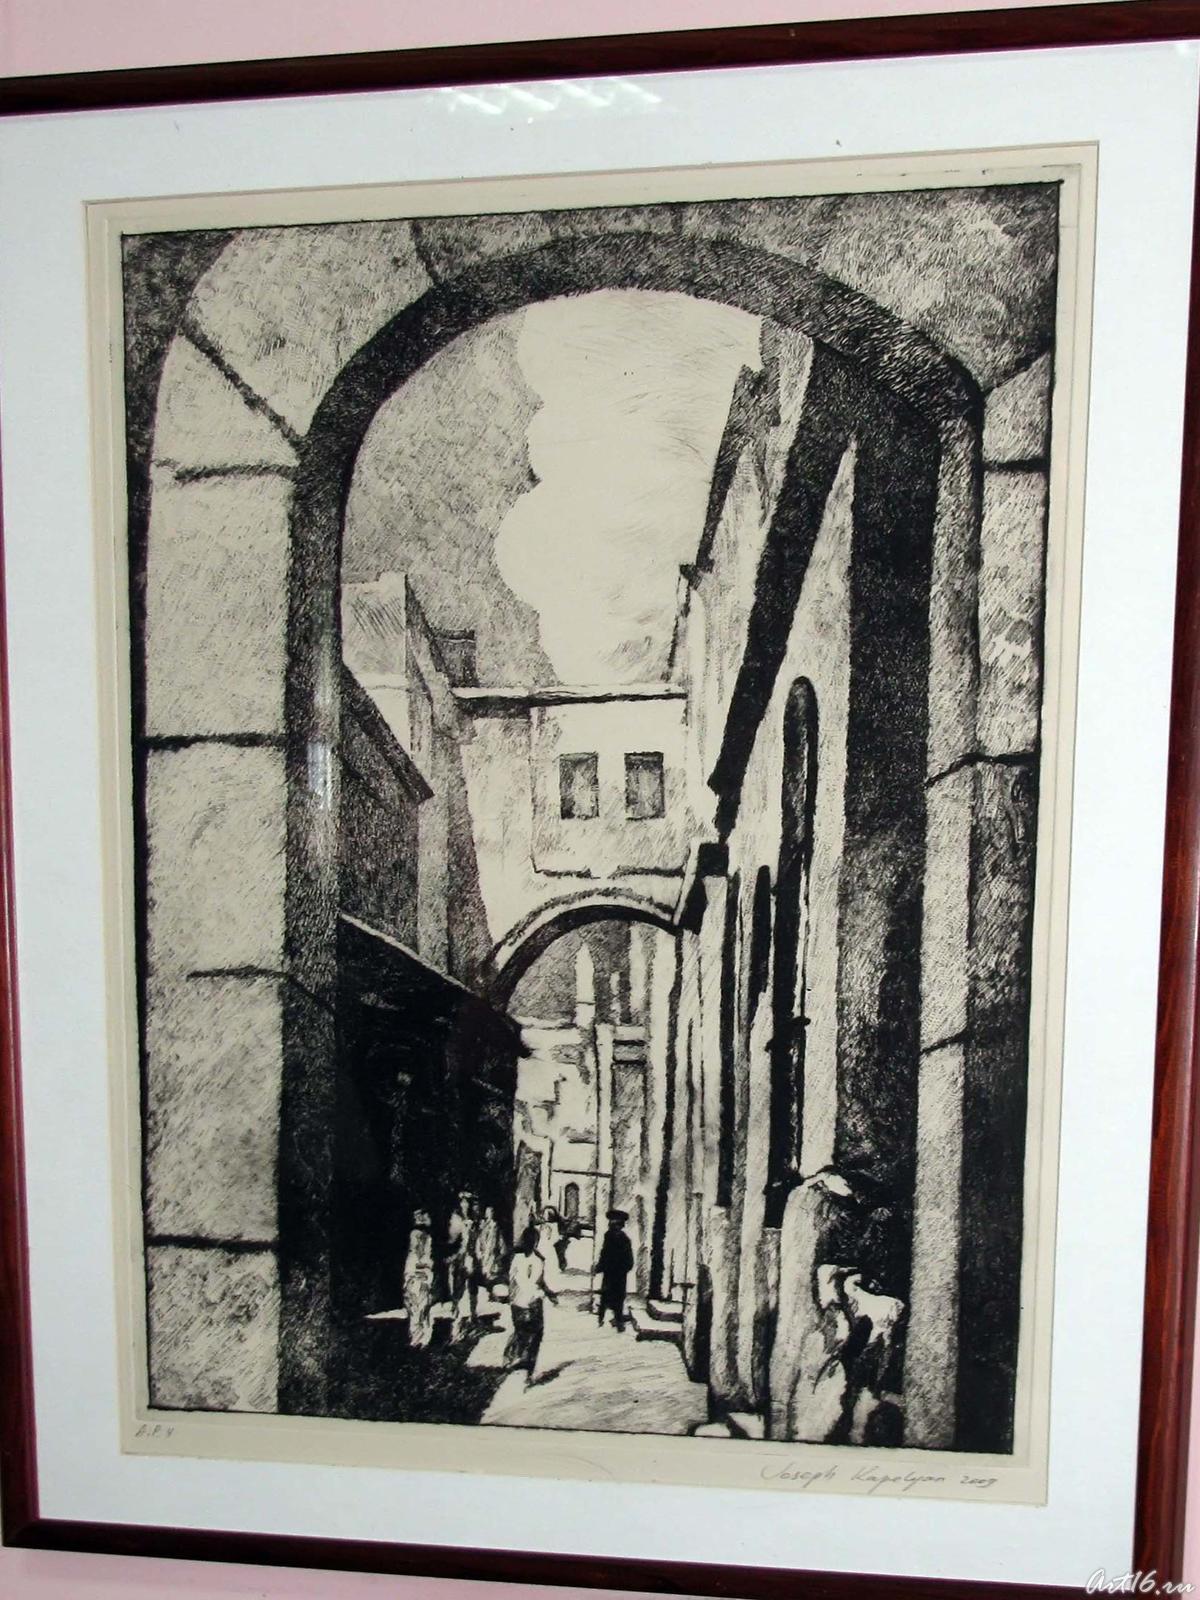 Фото №58198. Графический лист из серии "Старый Иерусалим" (2)